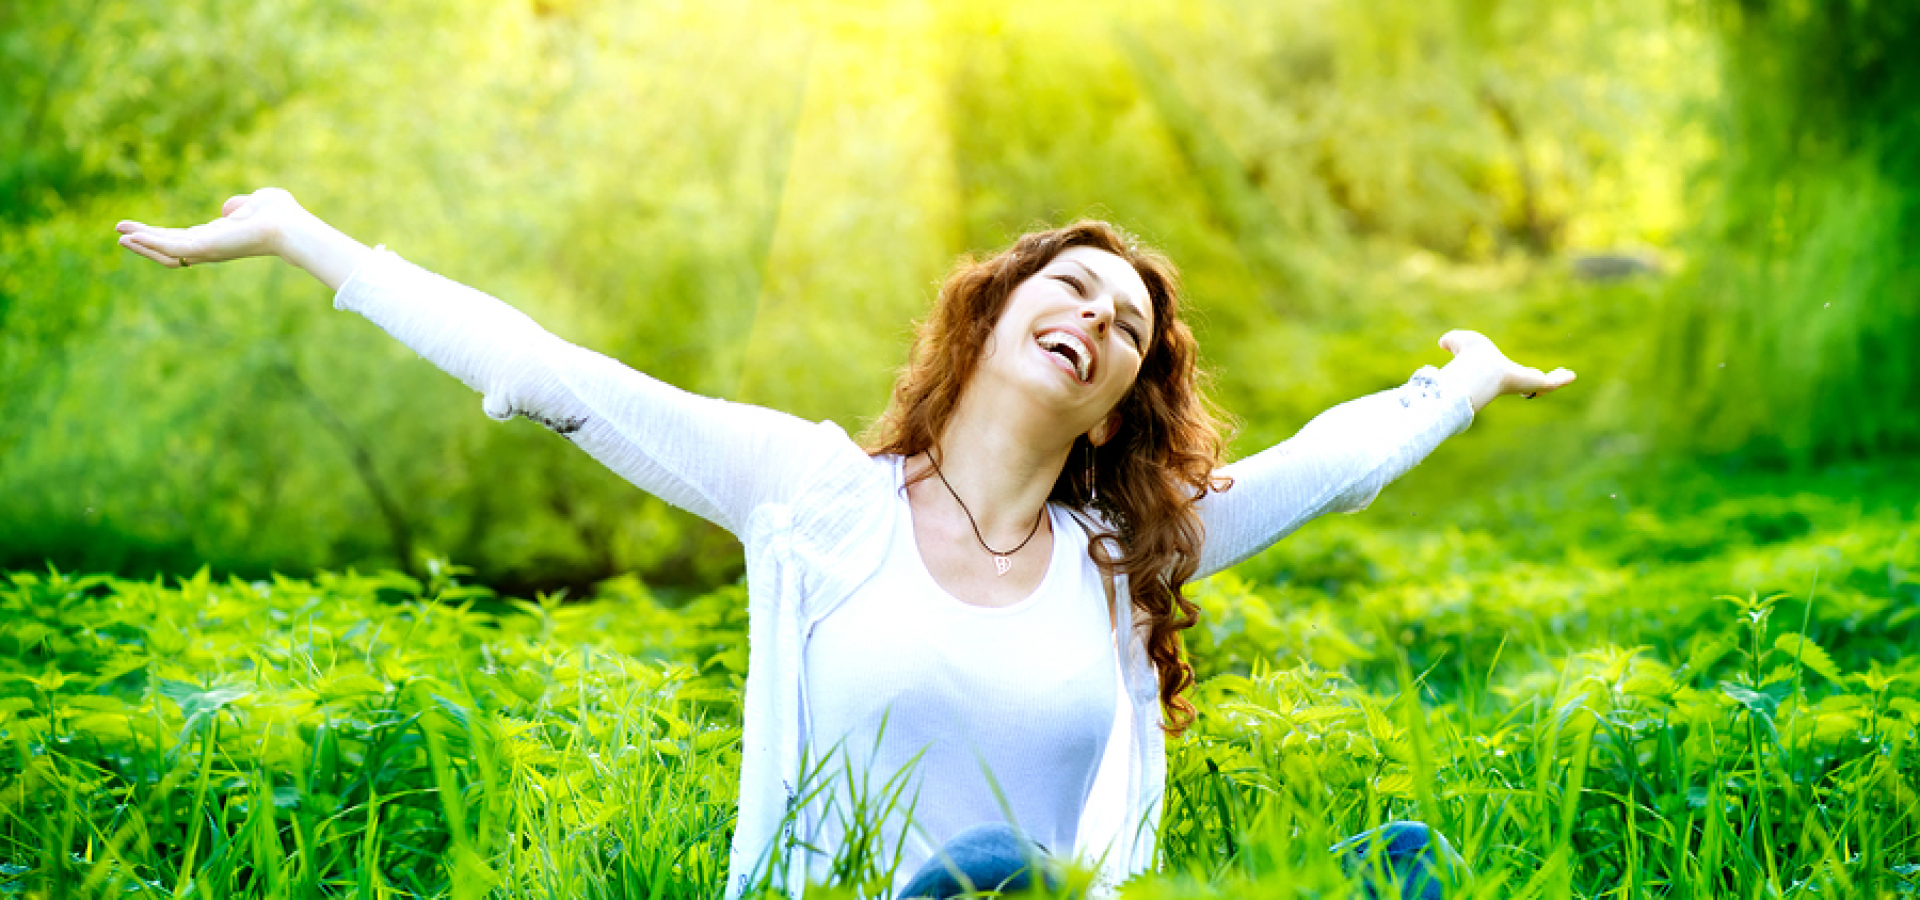 30 золотых принципов, которые полностью изменят жизнь и принесут в нее гармонию и счастье